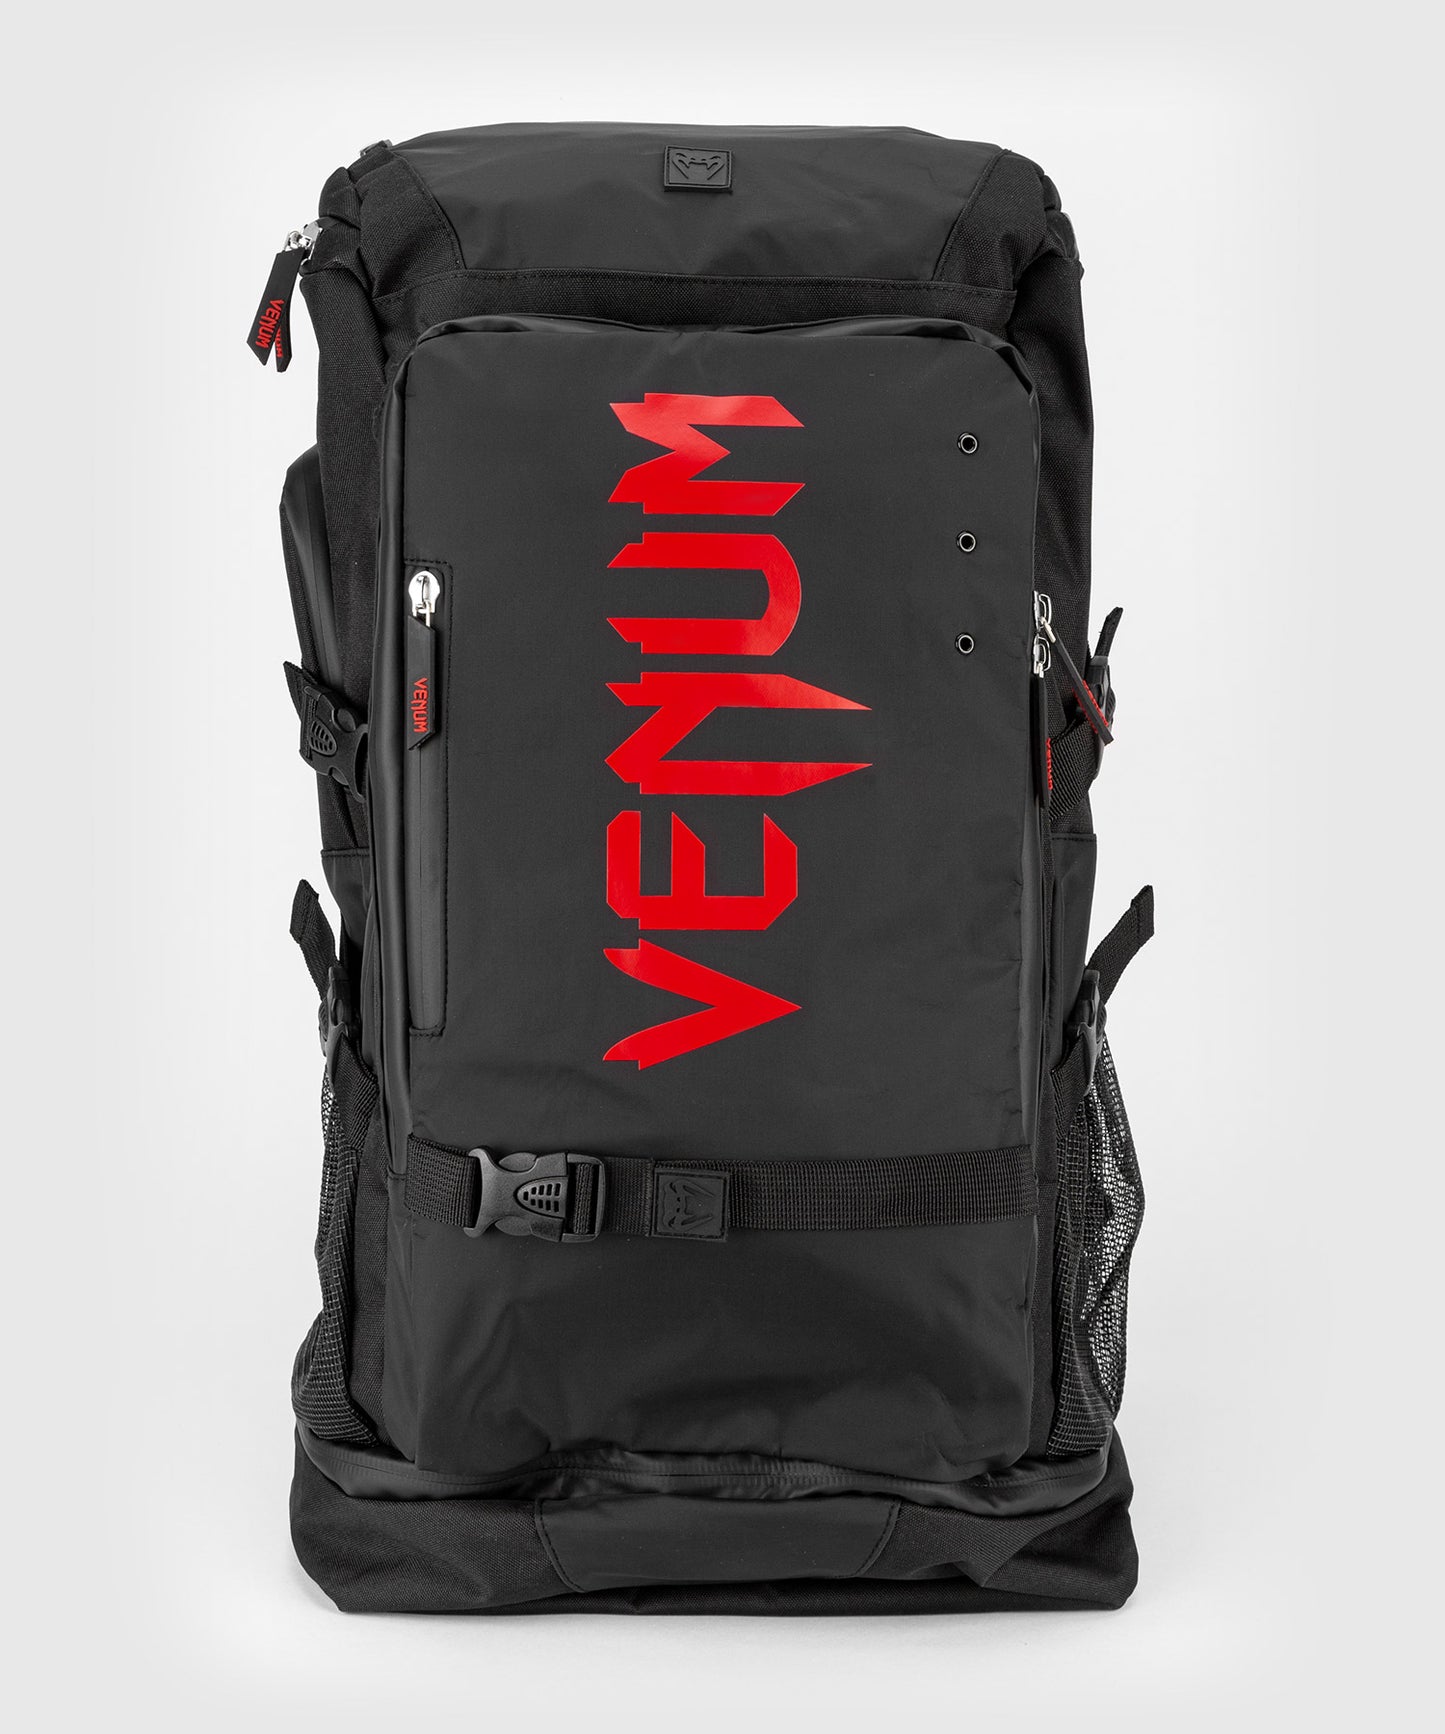 Venum Challenger Xtrem Evo BackPack - Black/Red